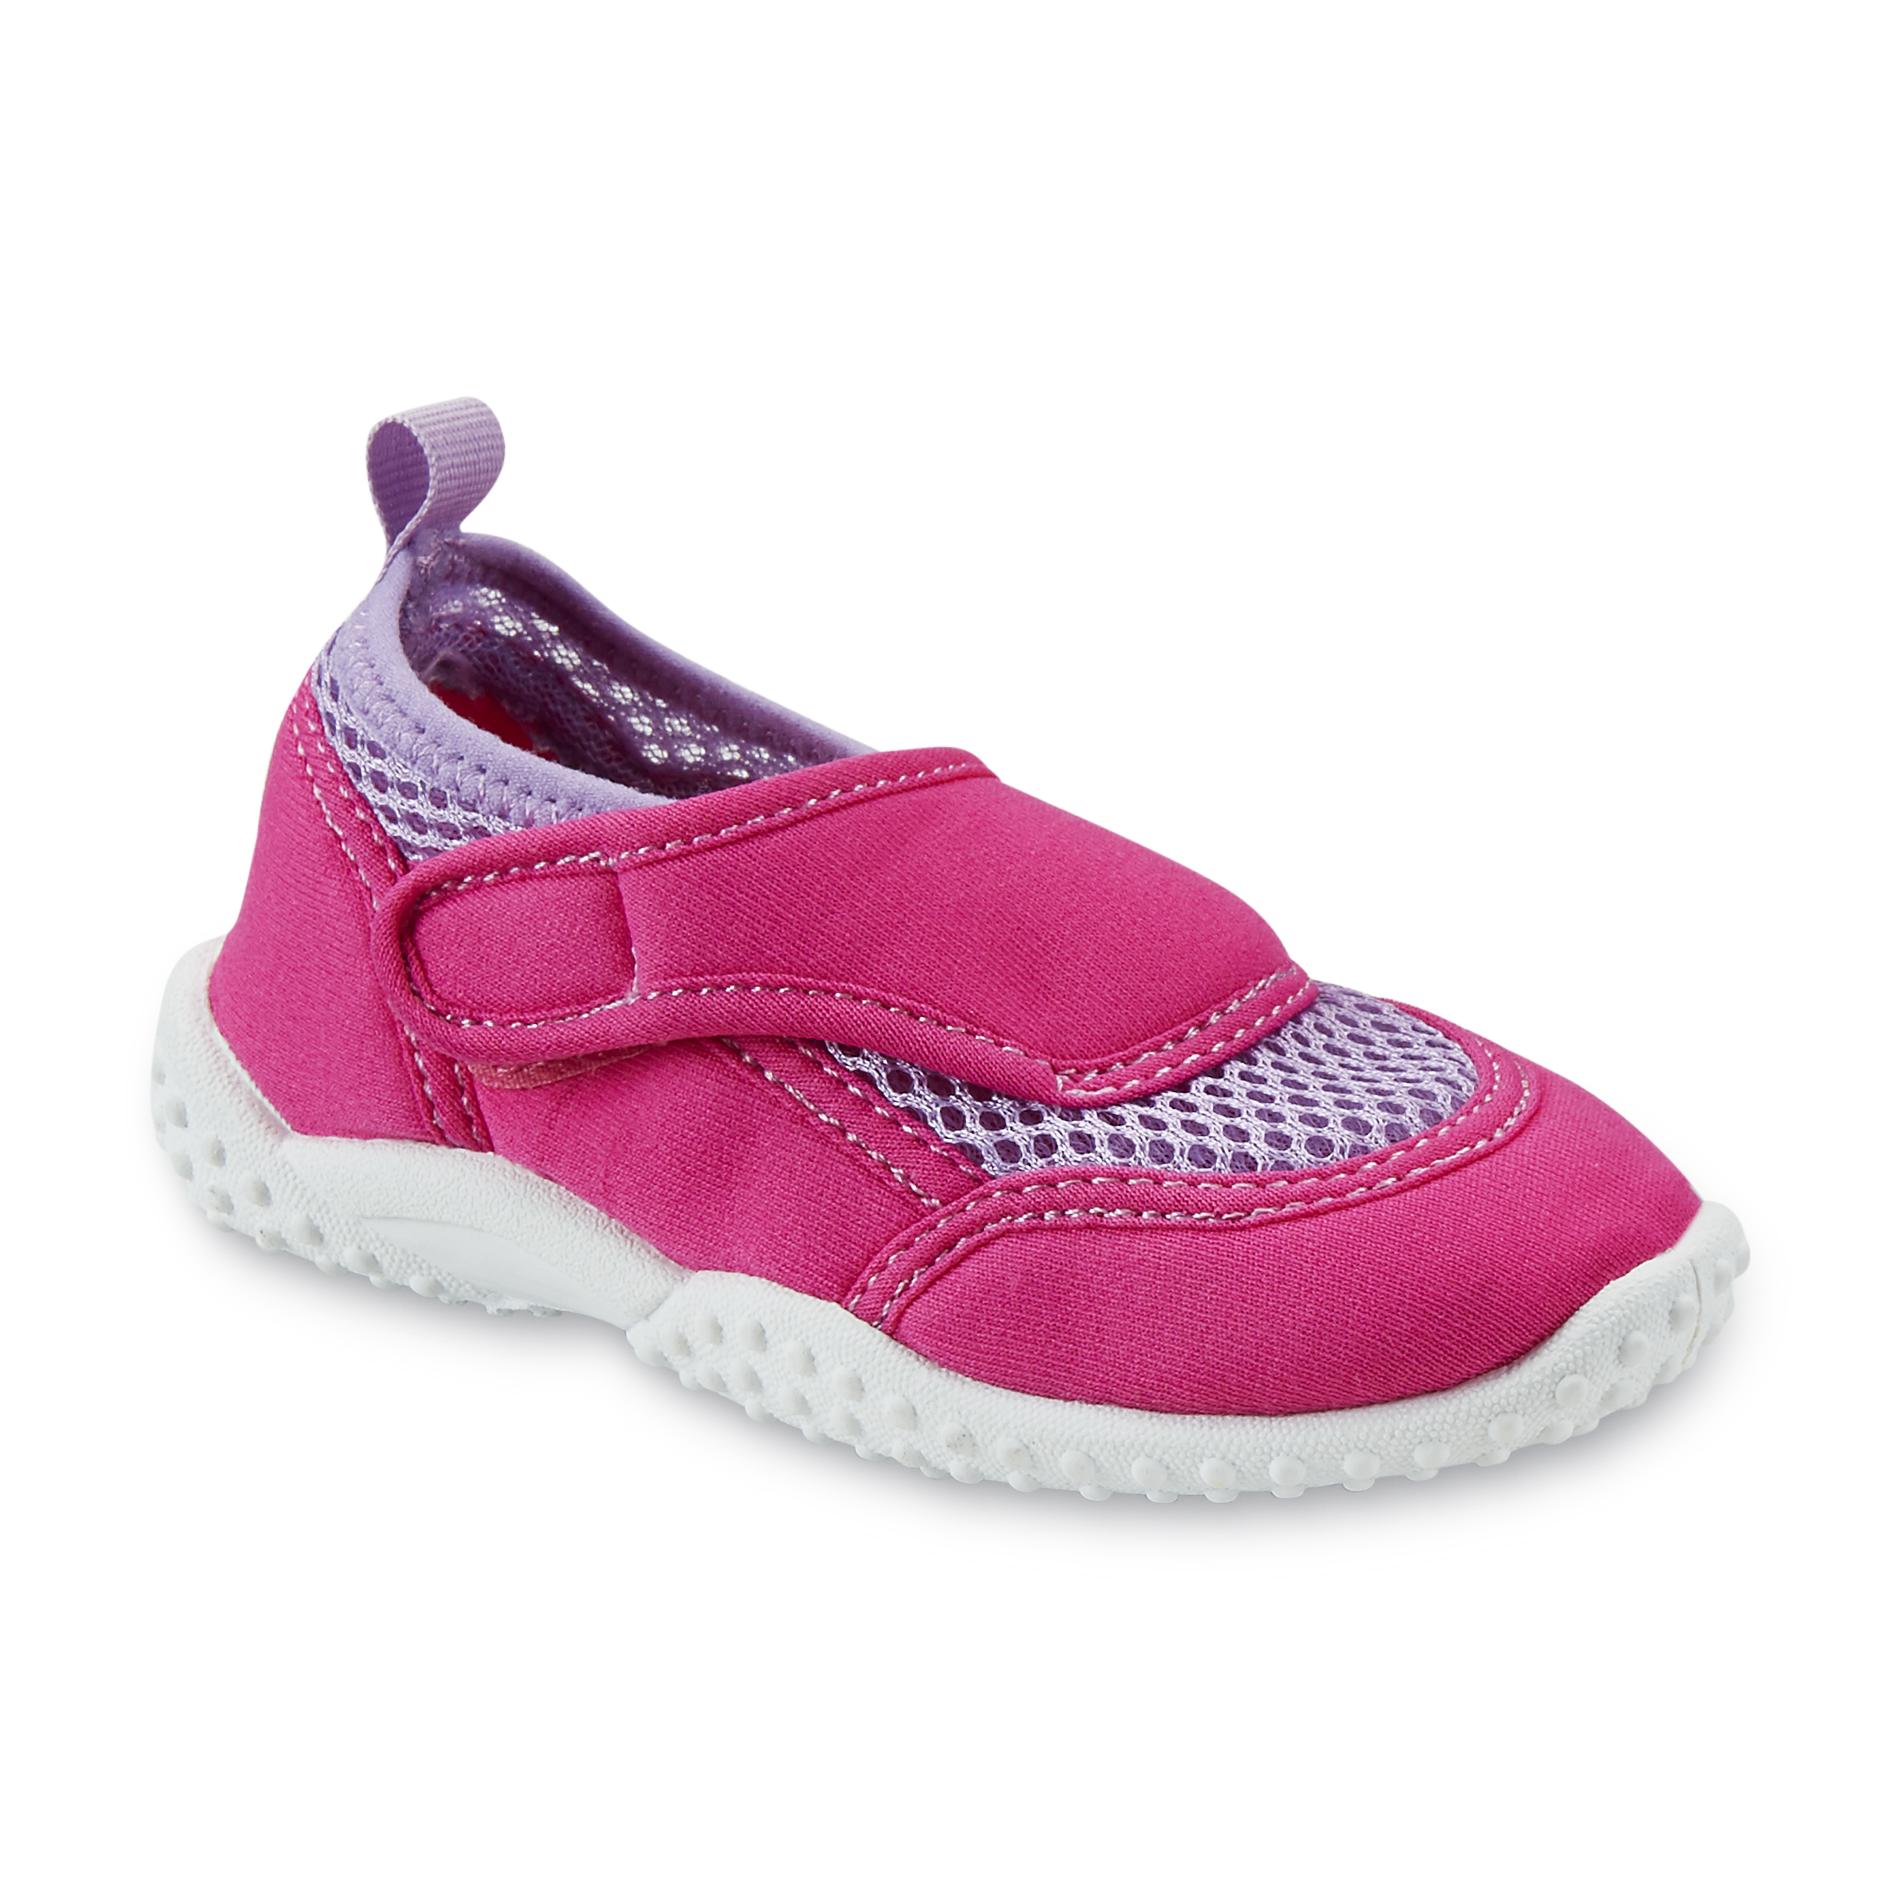 Athletech Toddler Girl's Swim Pink Water Shoe